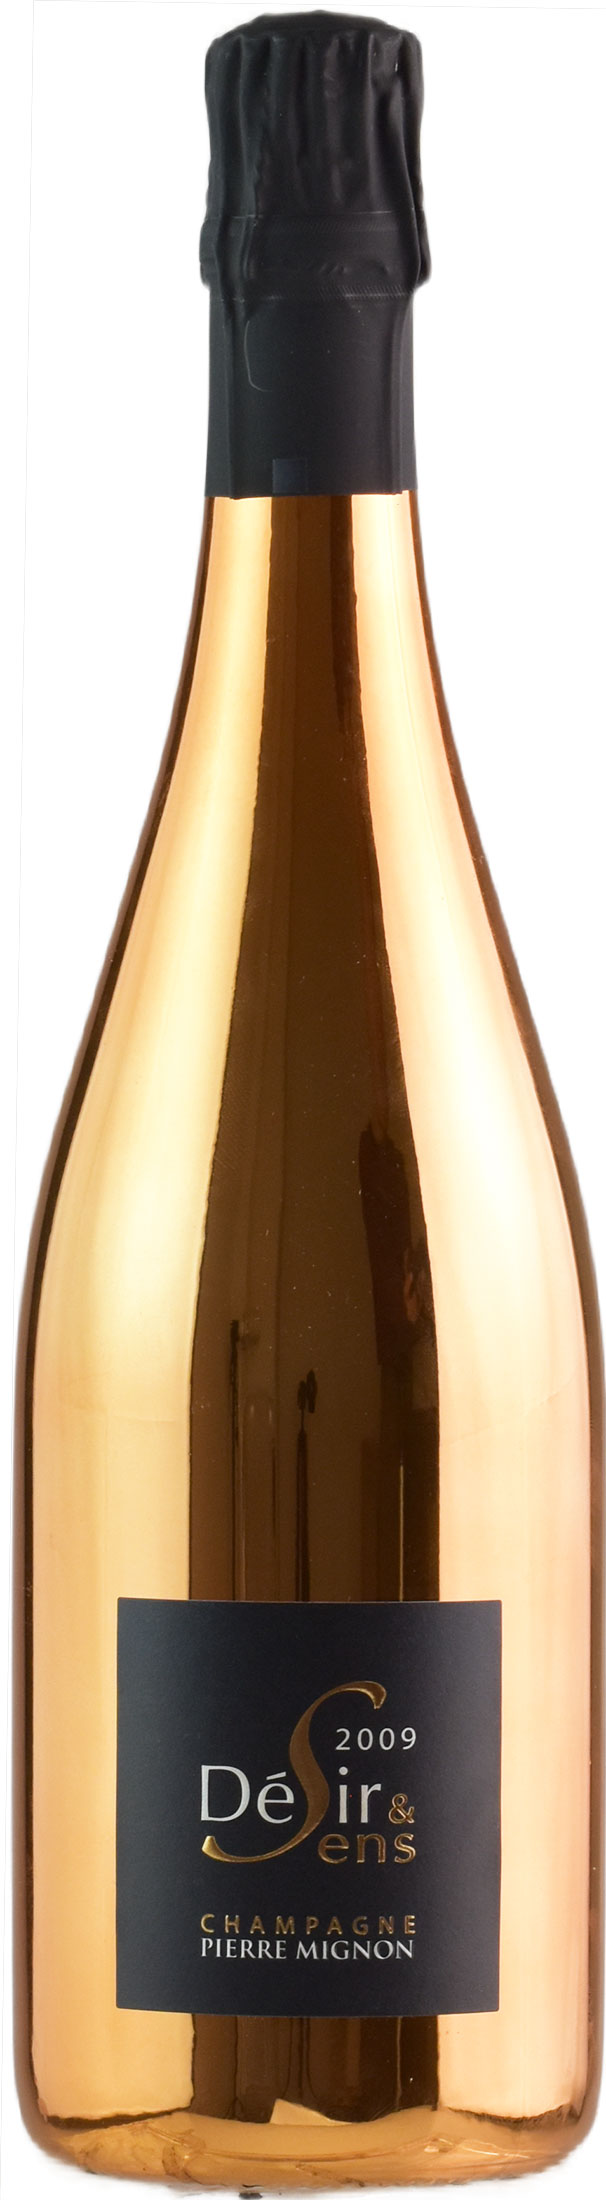 Pierre Mignon Champagne Blanc de Blancs Grand Cru Desir et Sense 2009